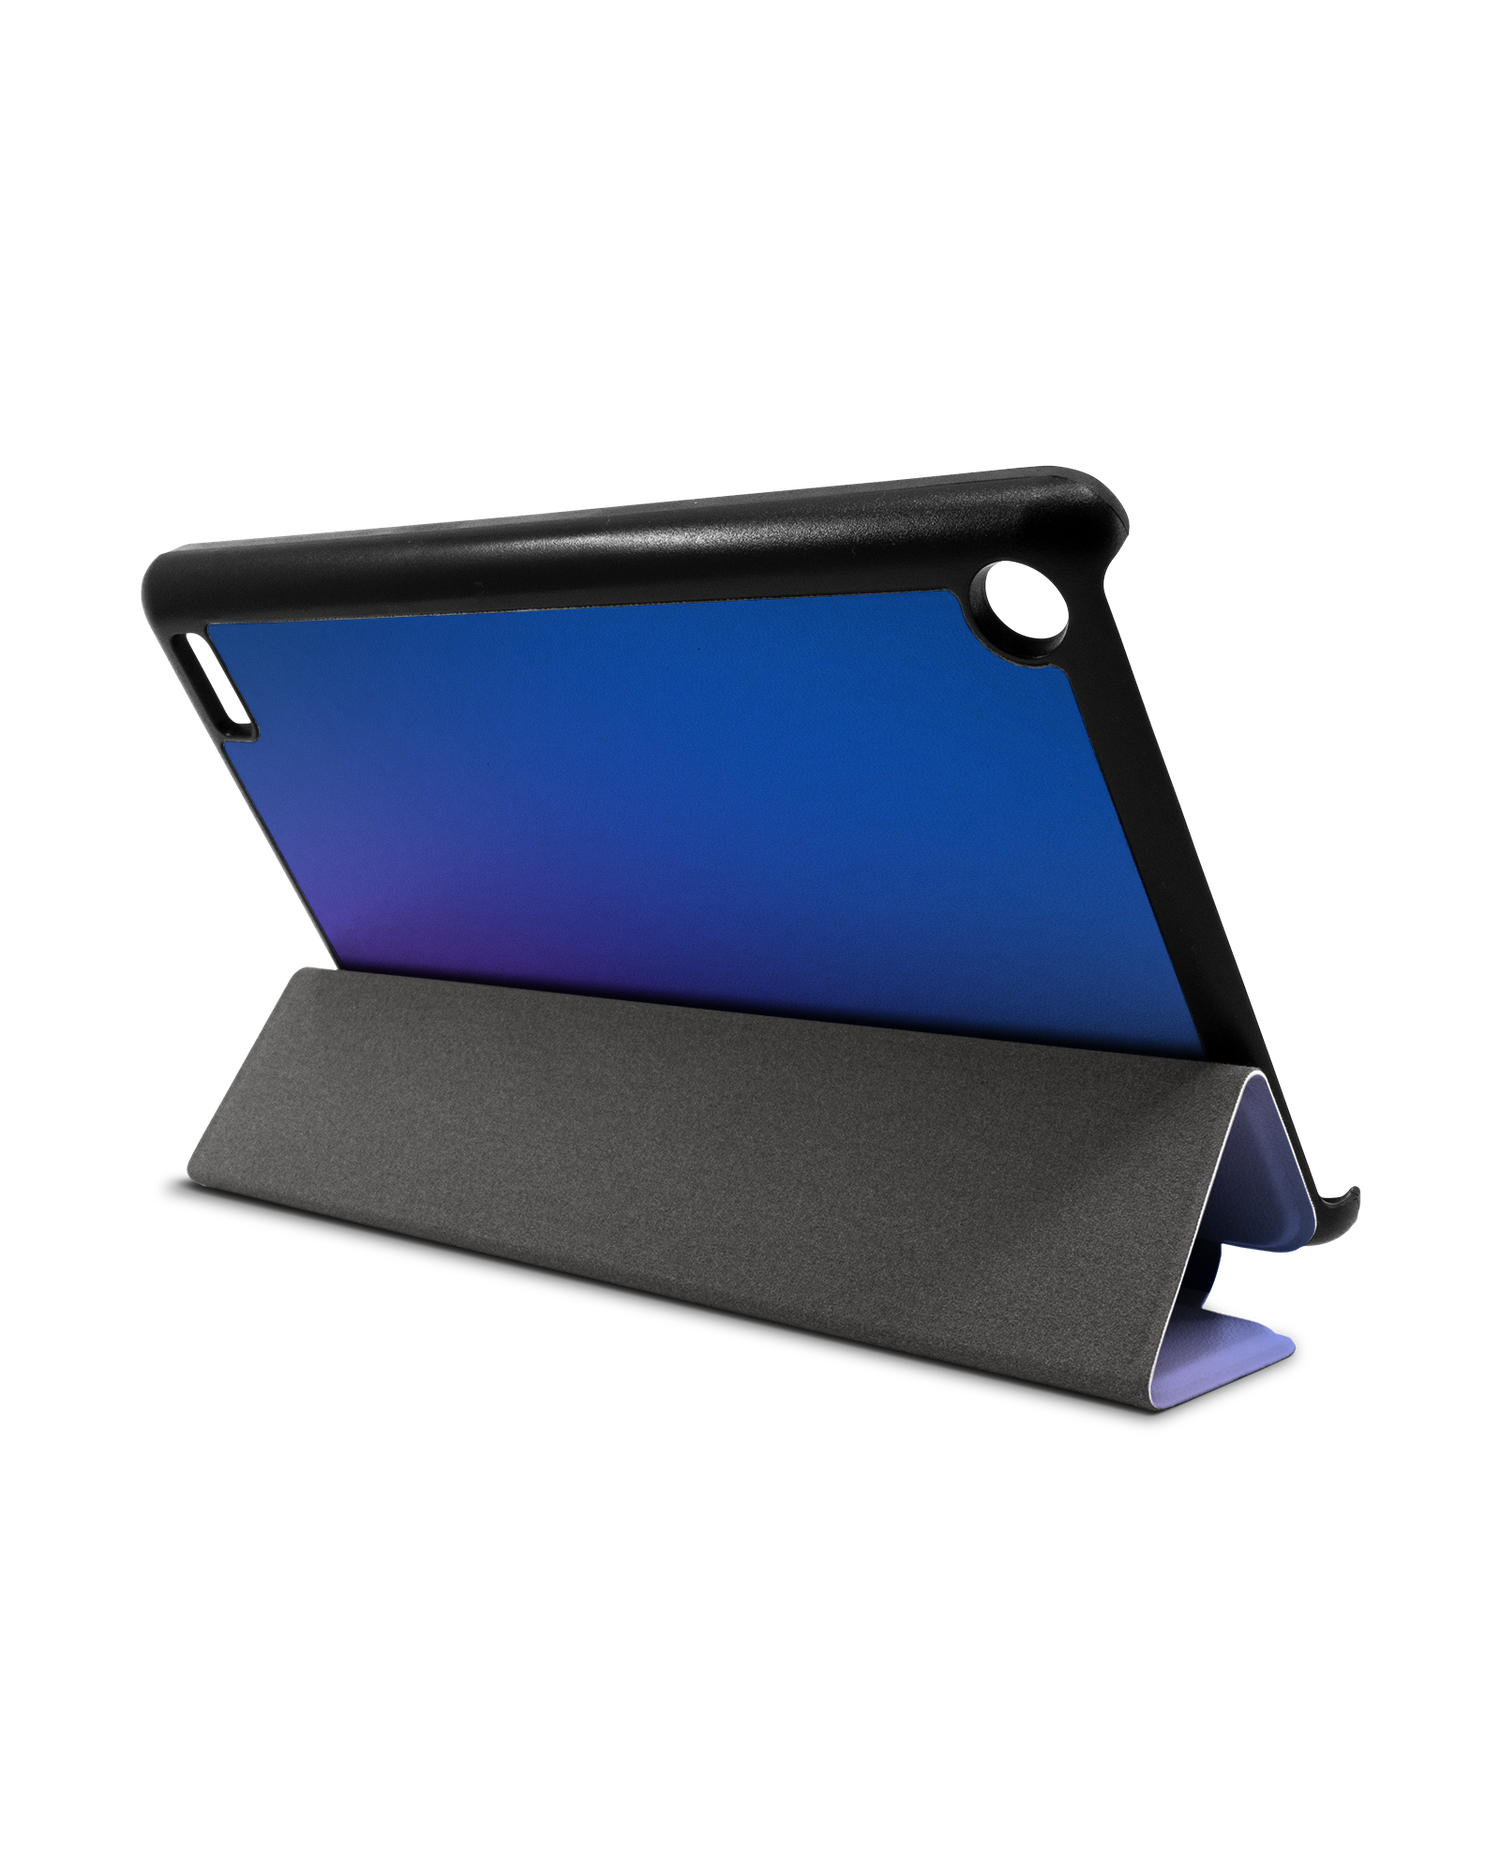 Blueberry Tablet Smart Case für Amazon Fire 7: Aufgestellt im Querformat